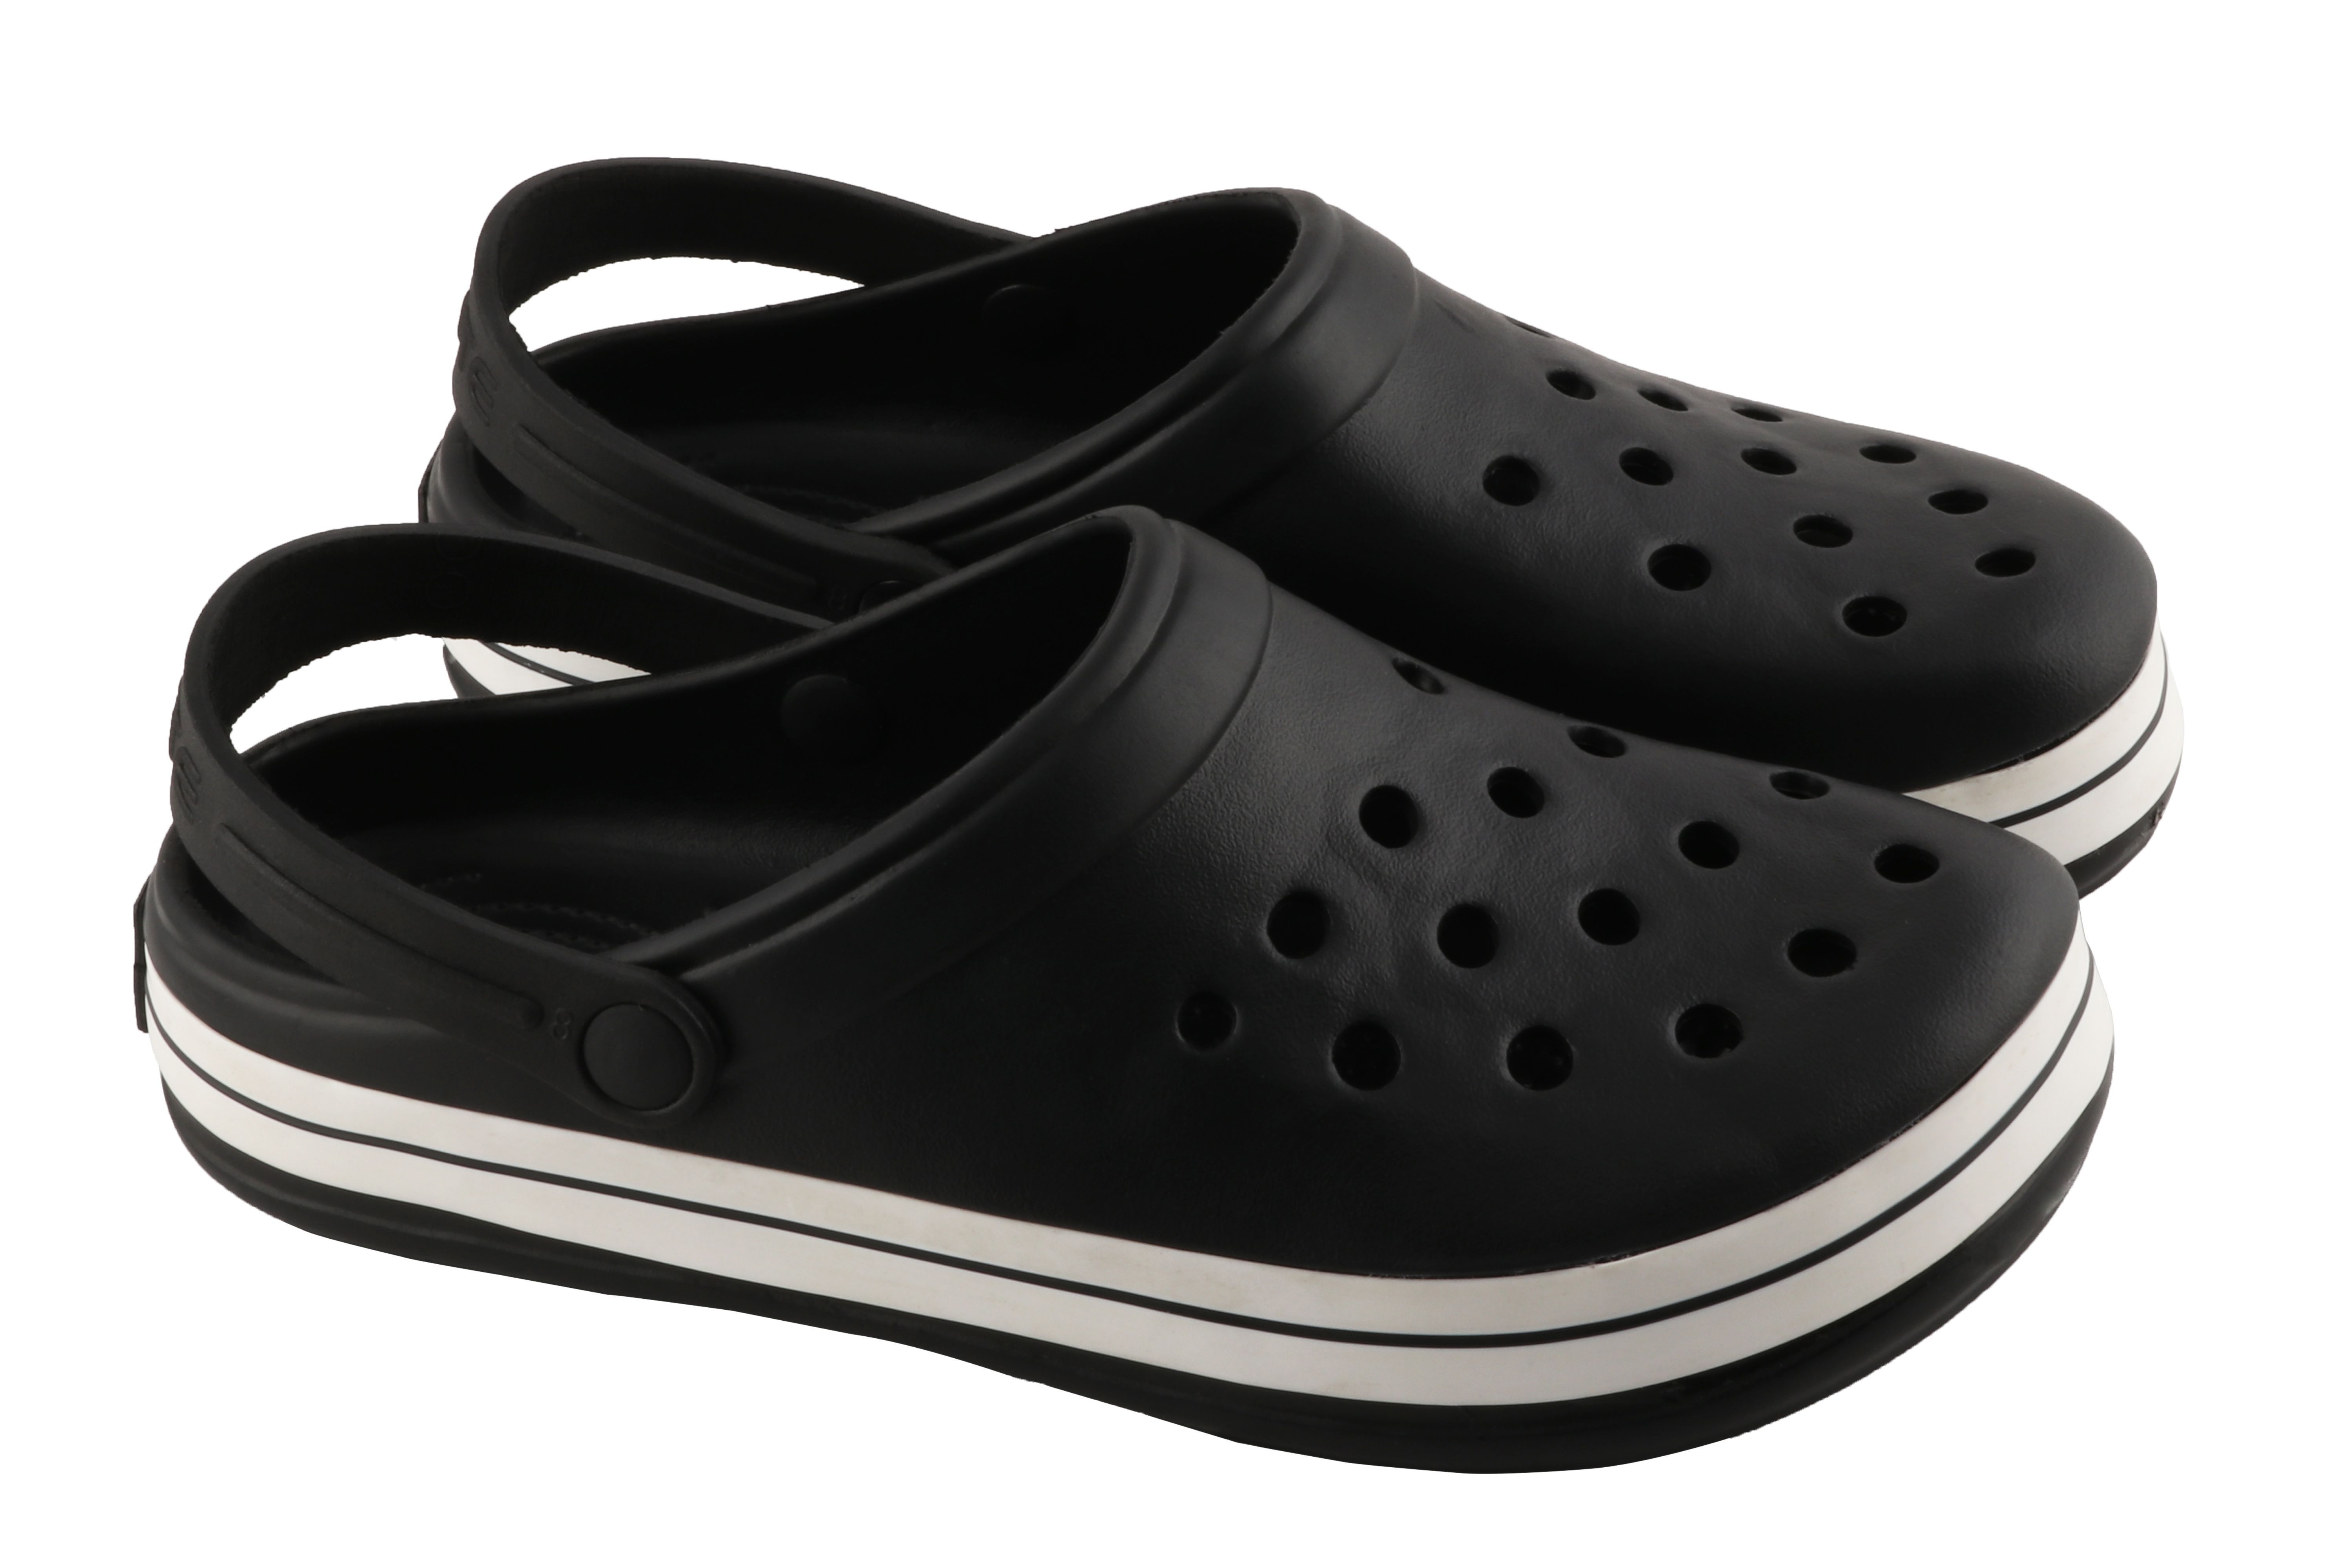 Jump Black Floater Sandals - Buy Jump Black Floater Sandals Online at ...